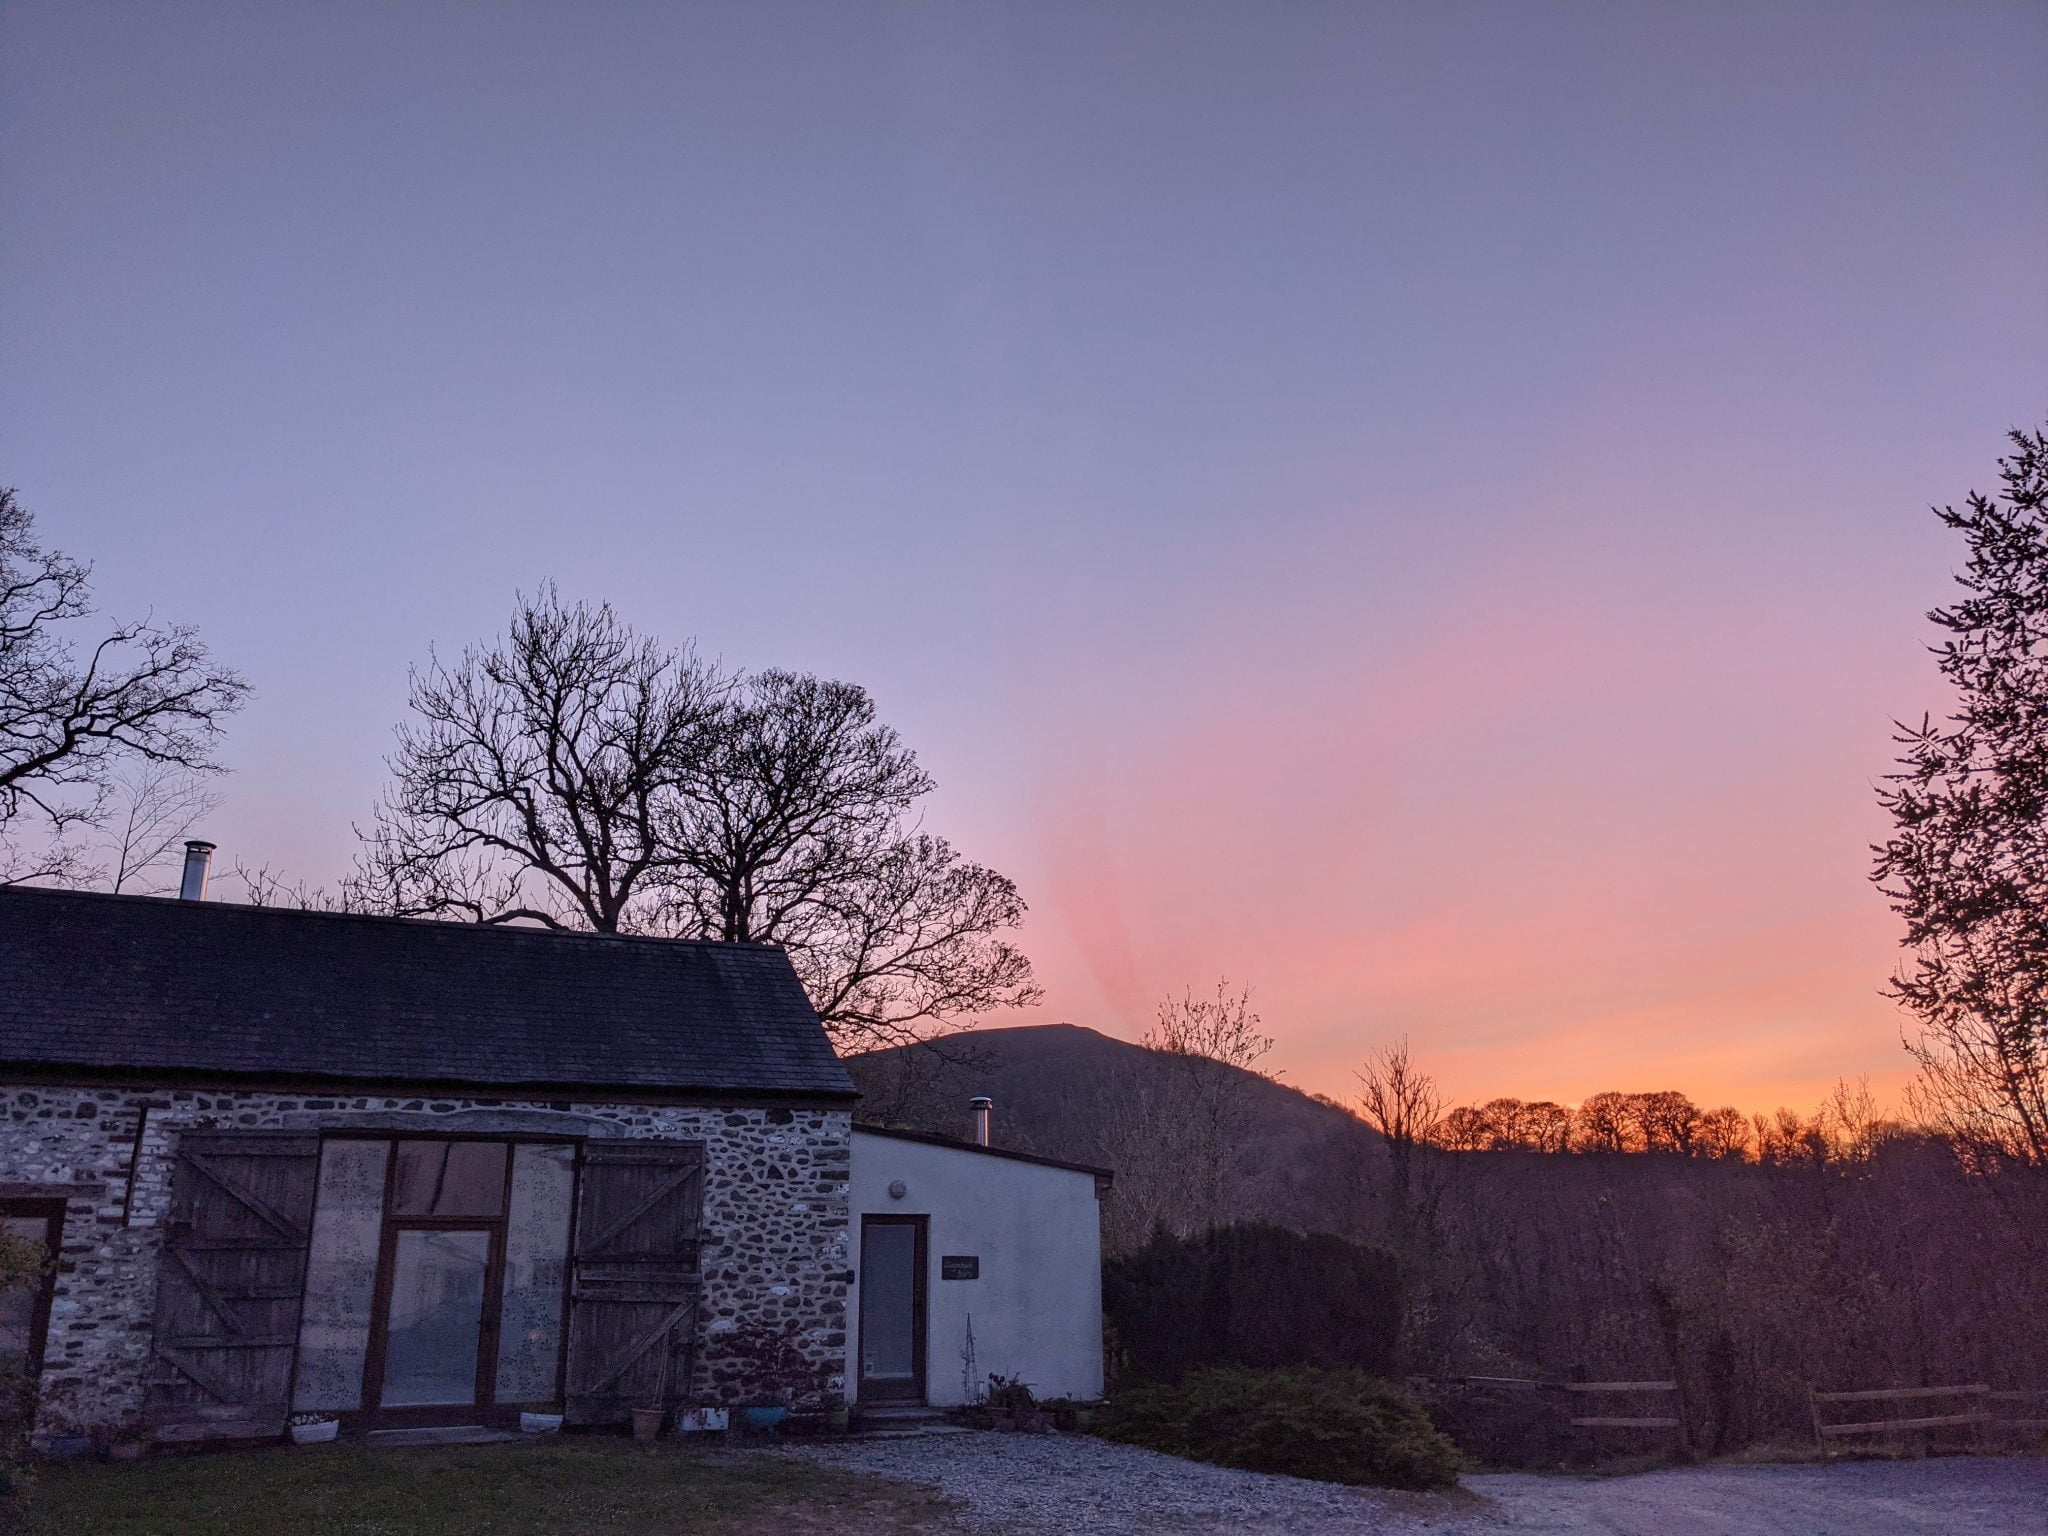 Llwynbwch Barn at sunset